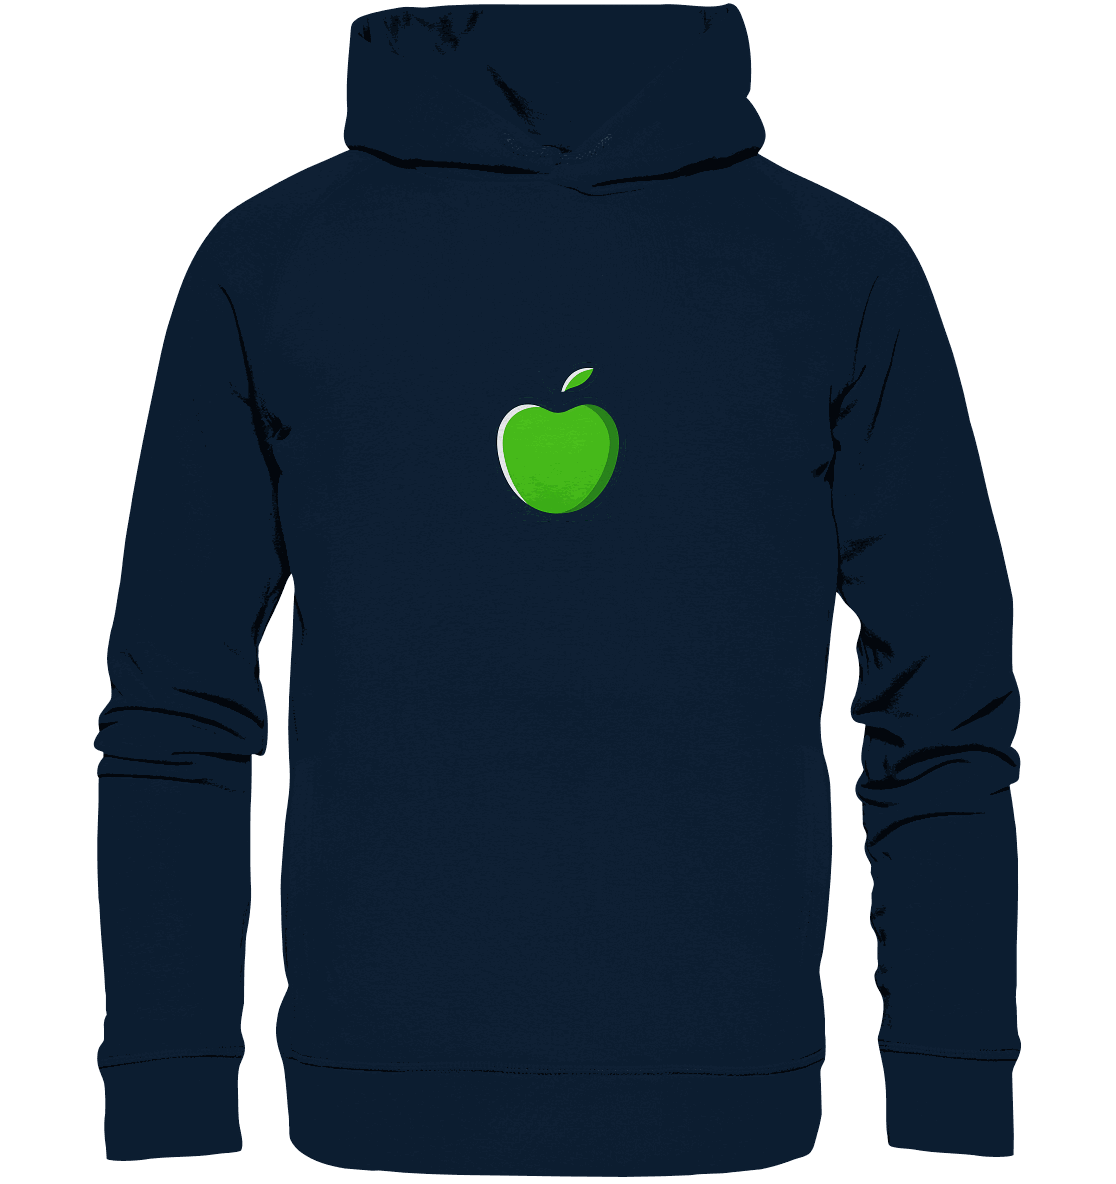 Fruit Apfel Hoodie - green Apple